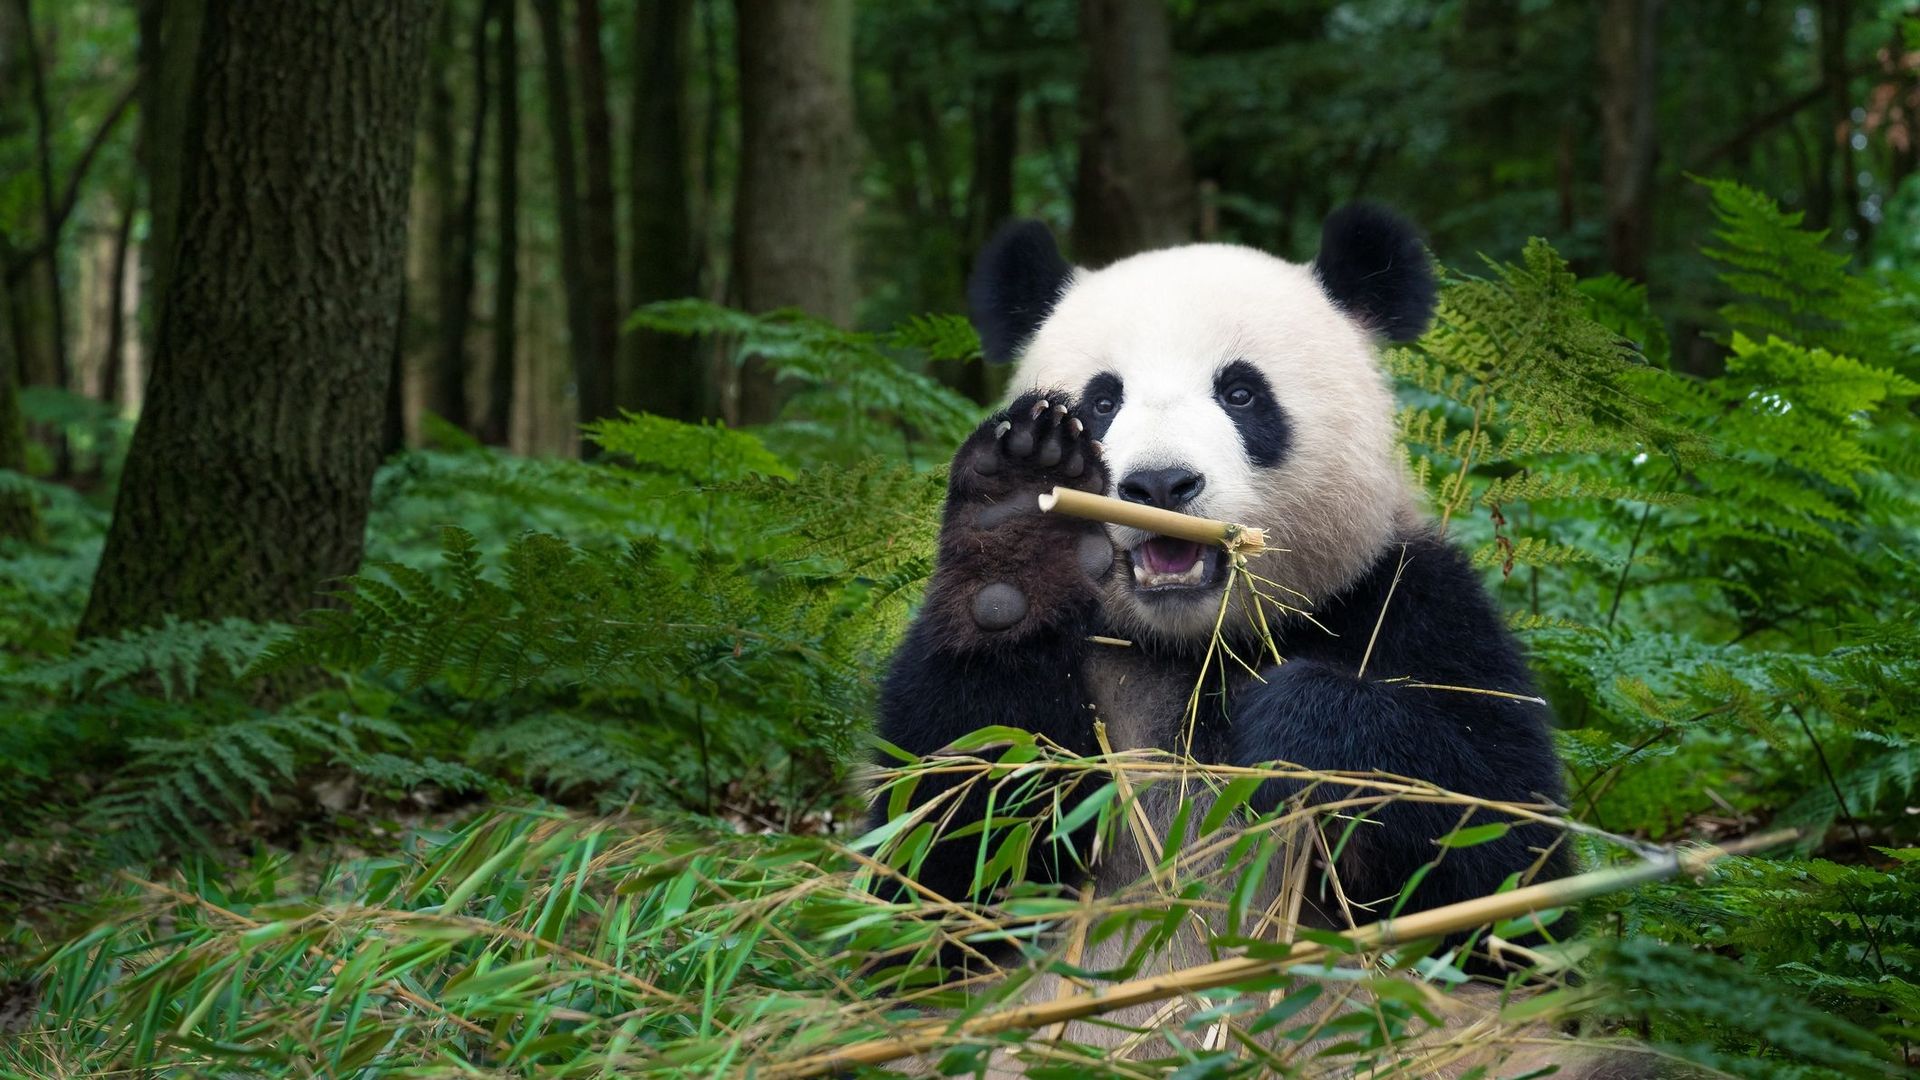 Protéger le panda n'aide pas toutes les espèces de son habitat.